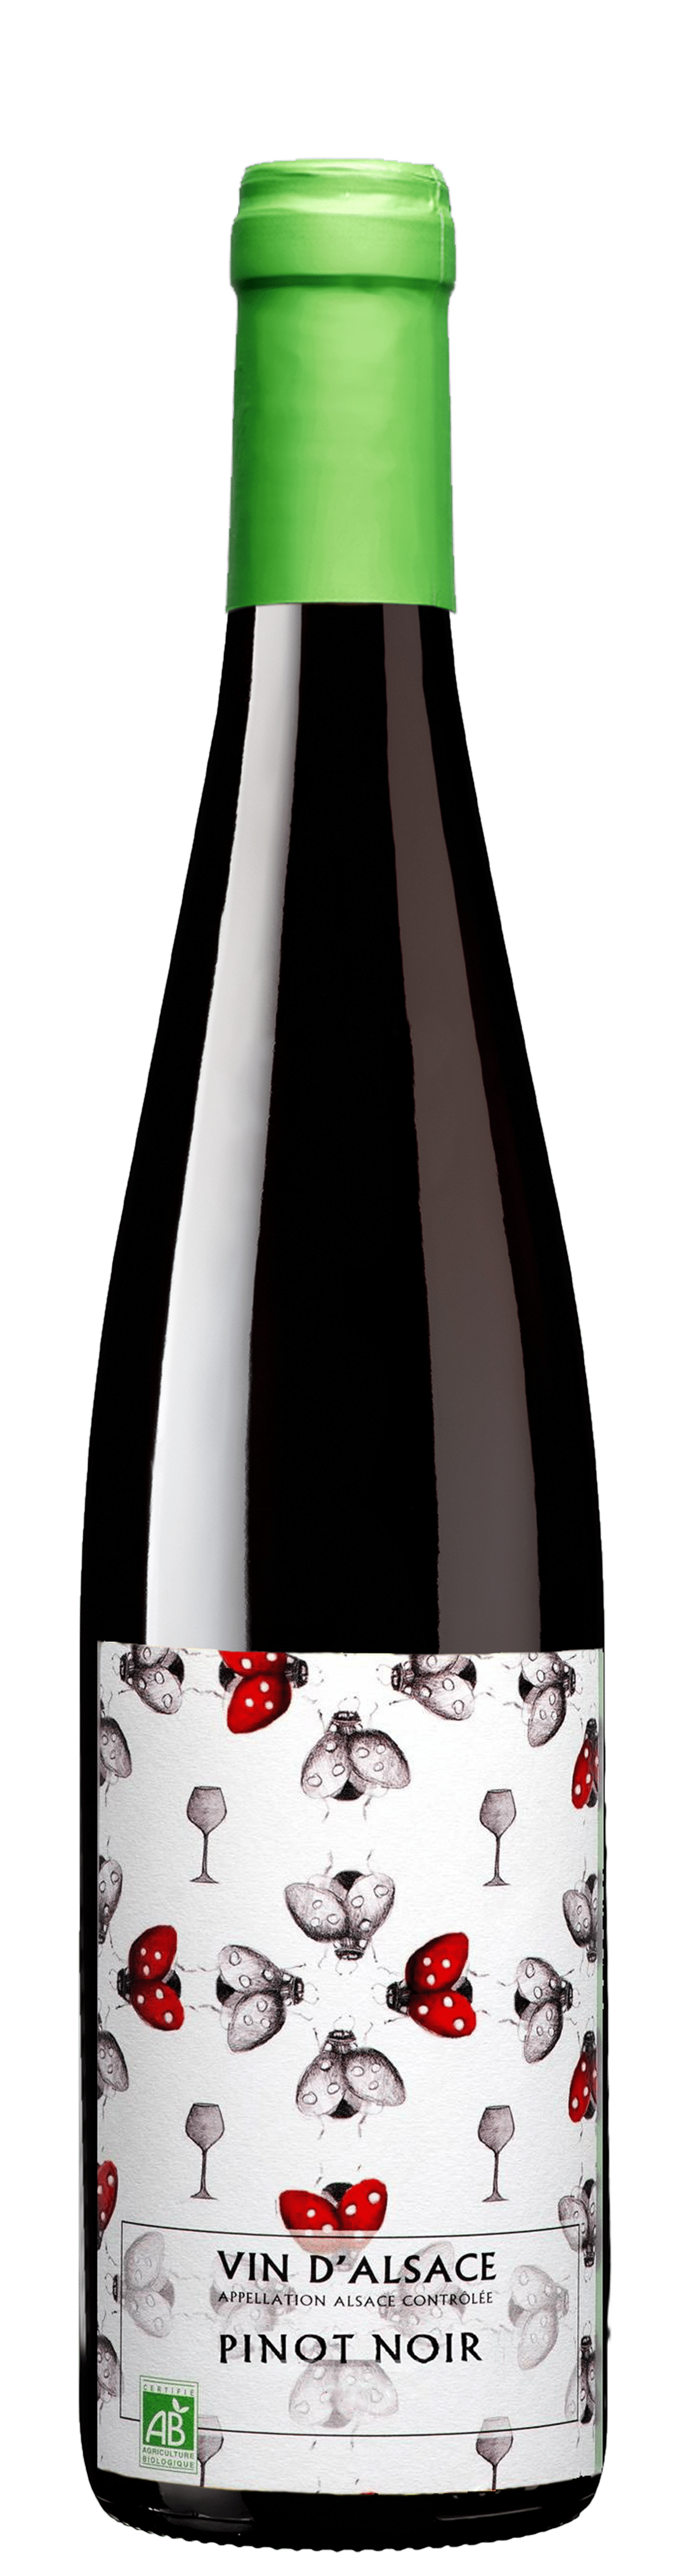 Bouteille de Pinot Noir Bio Cave de Ribeauvillé